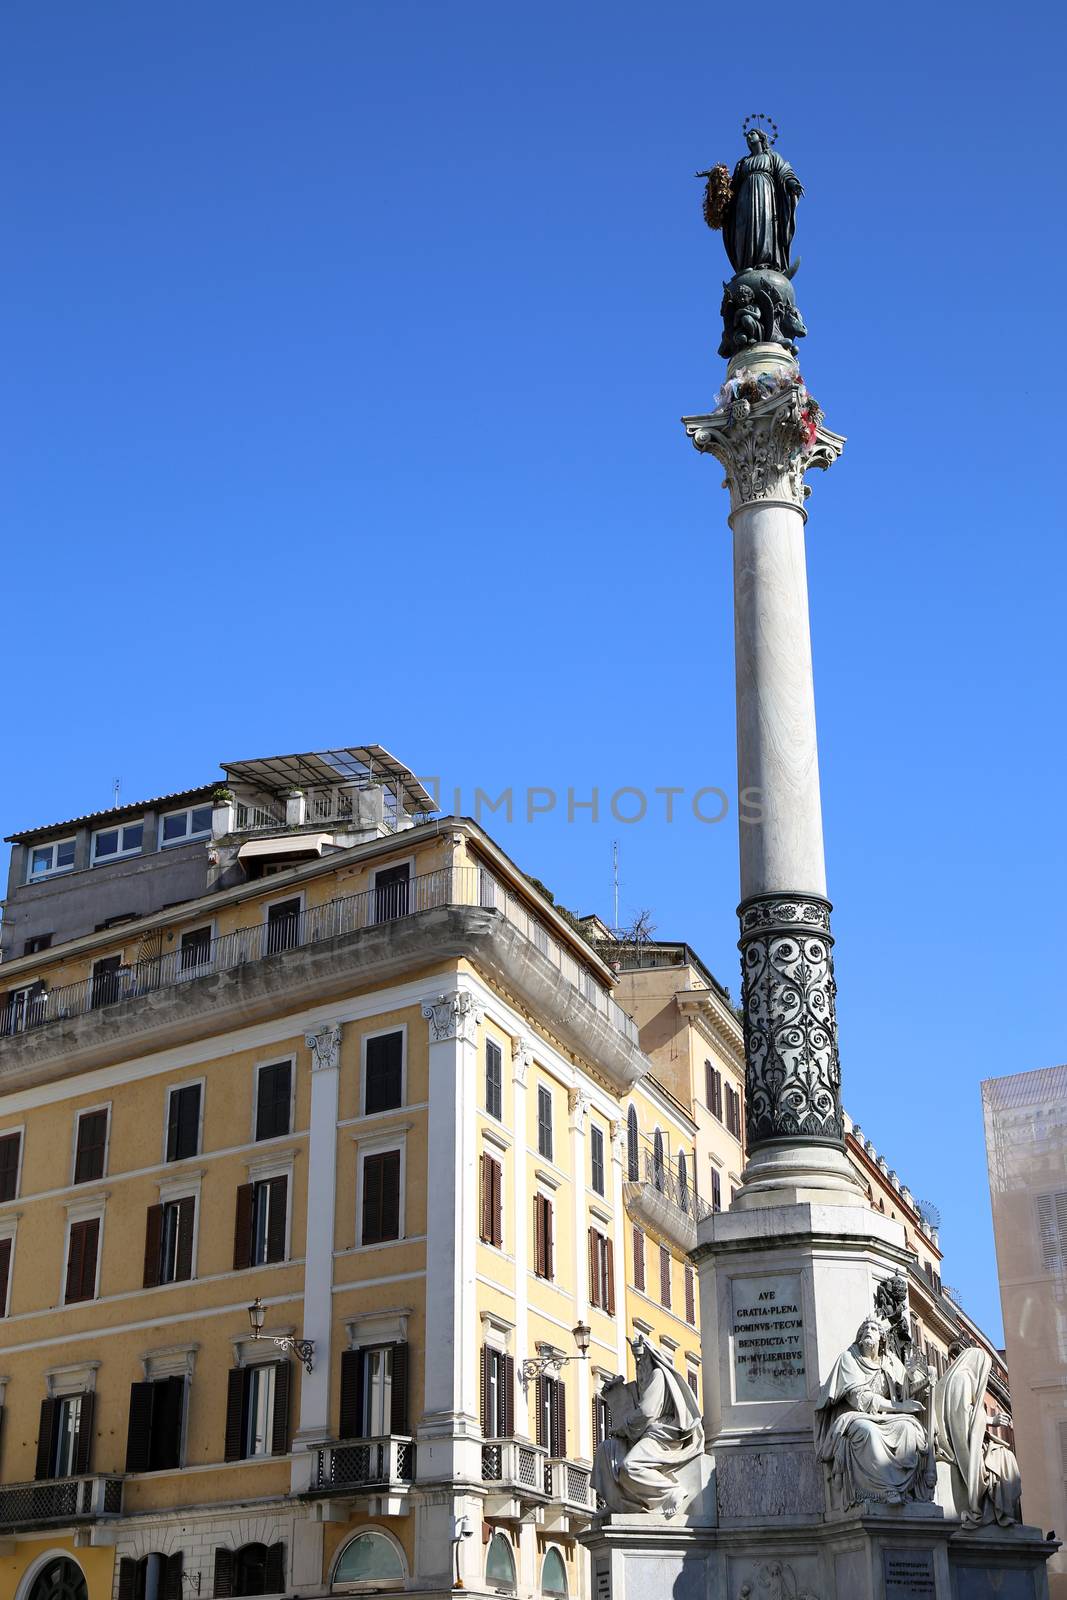 Piazza di Spagna in Rome, Italy by vladacanon